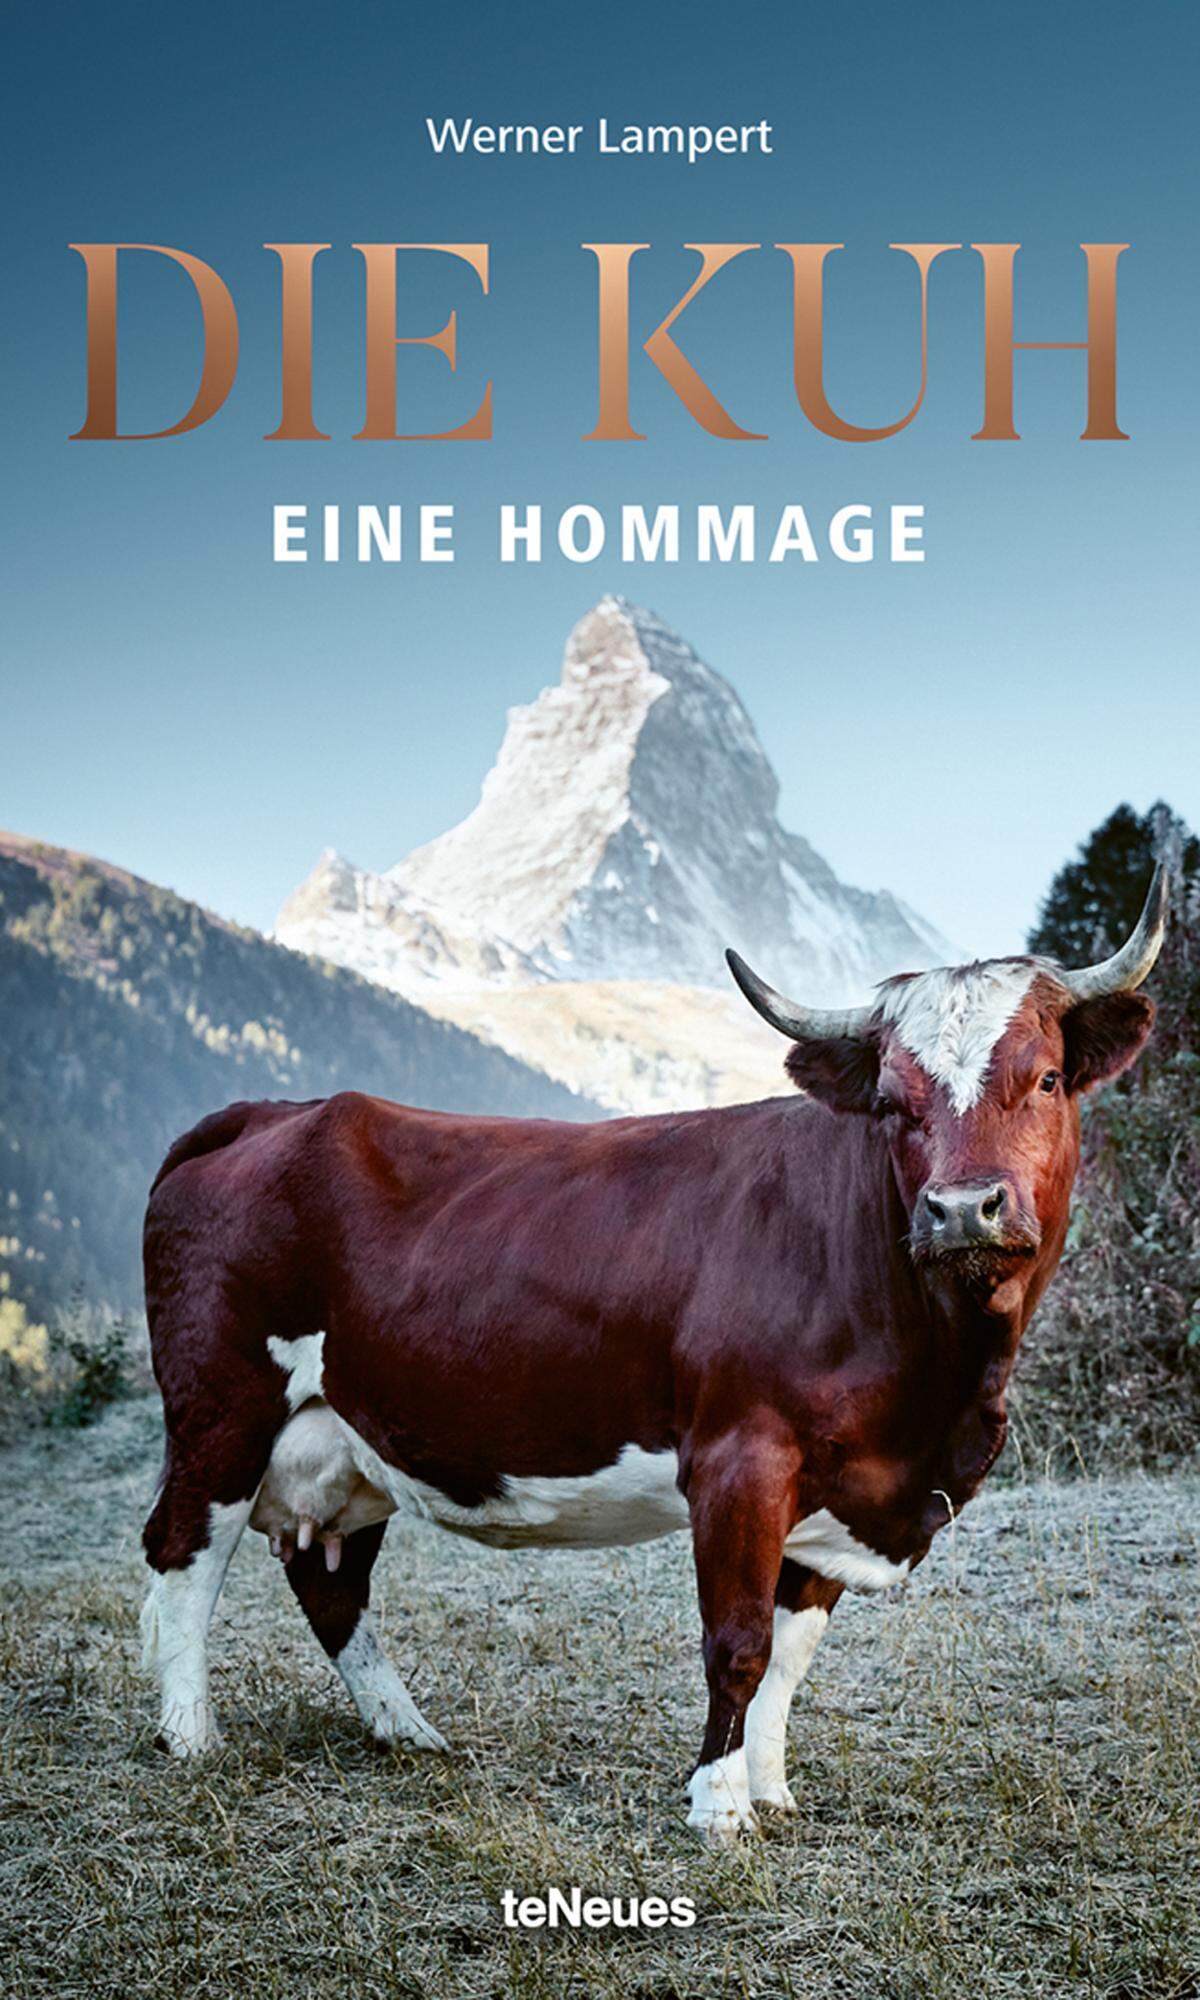 Der Bildband "Die Kuh - Eine Hommage" ist im Verlag teNeues erschienen. Kosten: 49,90.